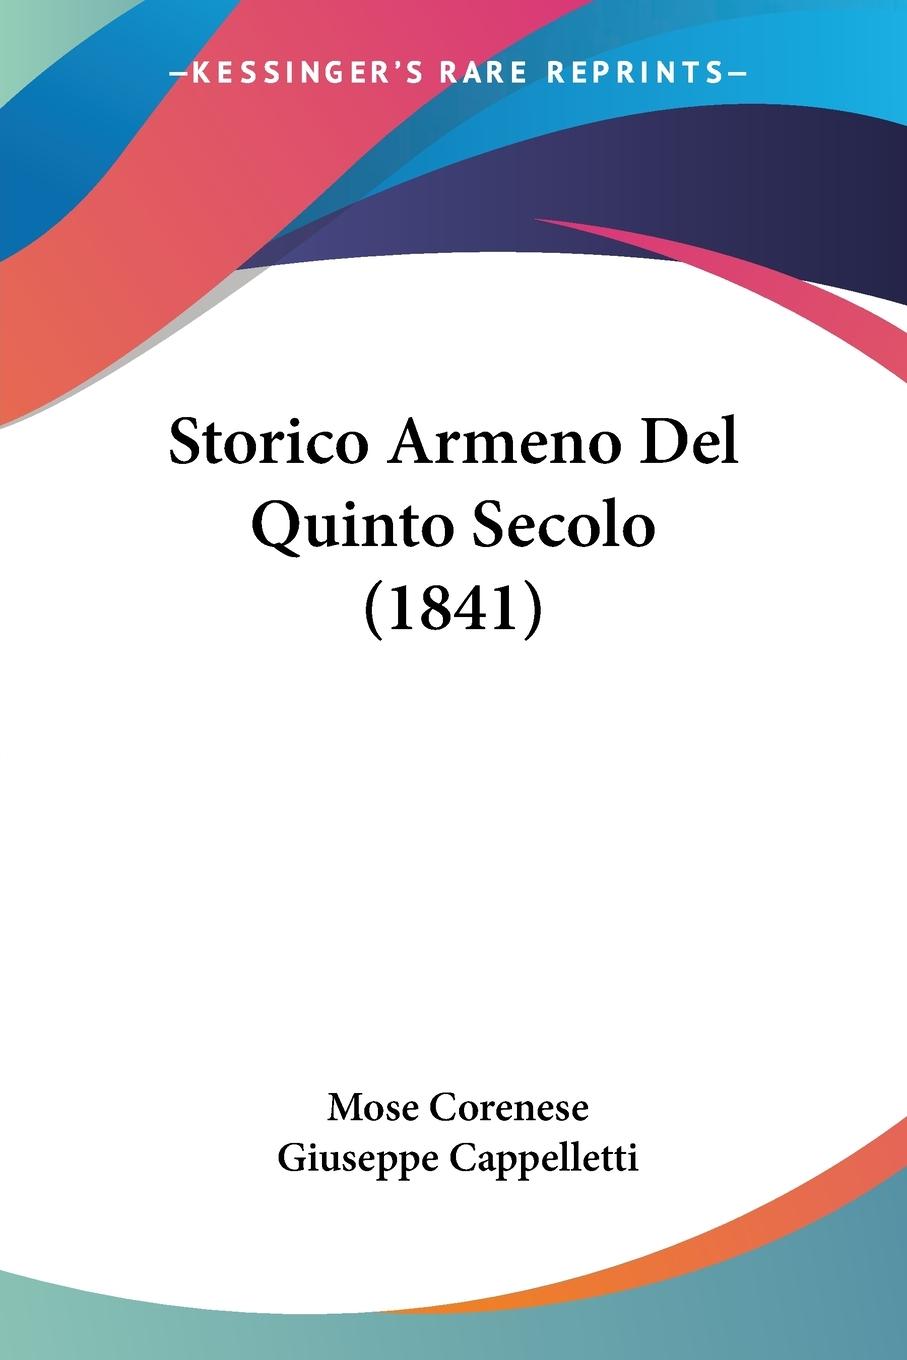 Storico Armeno Del Quinto Secolo (1841) - Corenese, Mose Cappelletti, Giuseppe